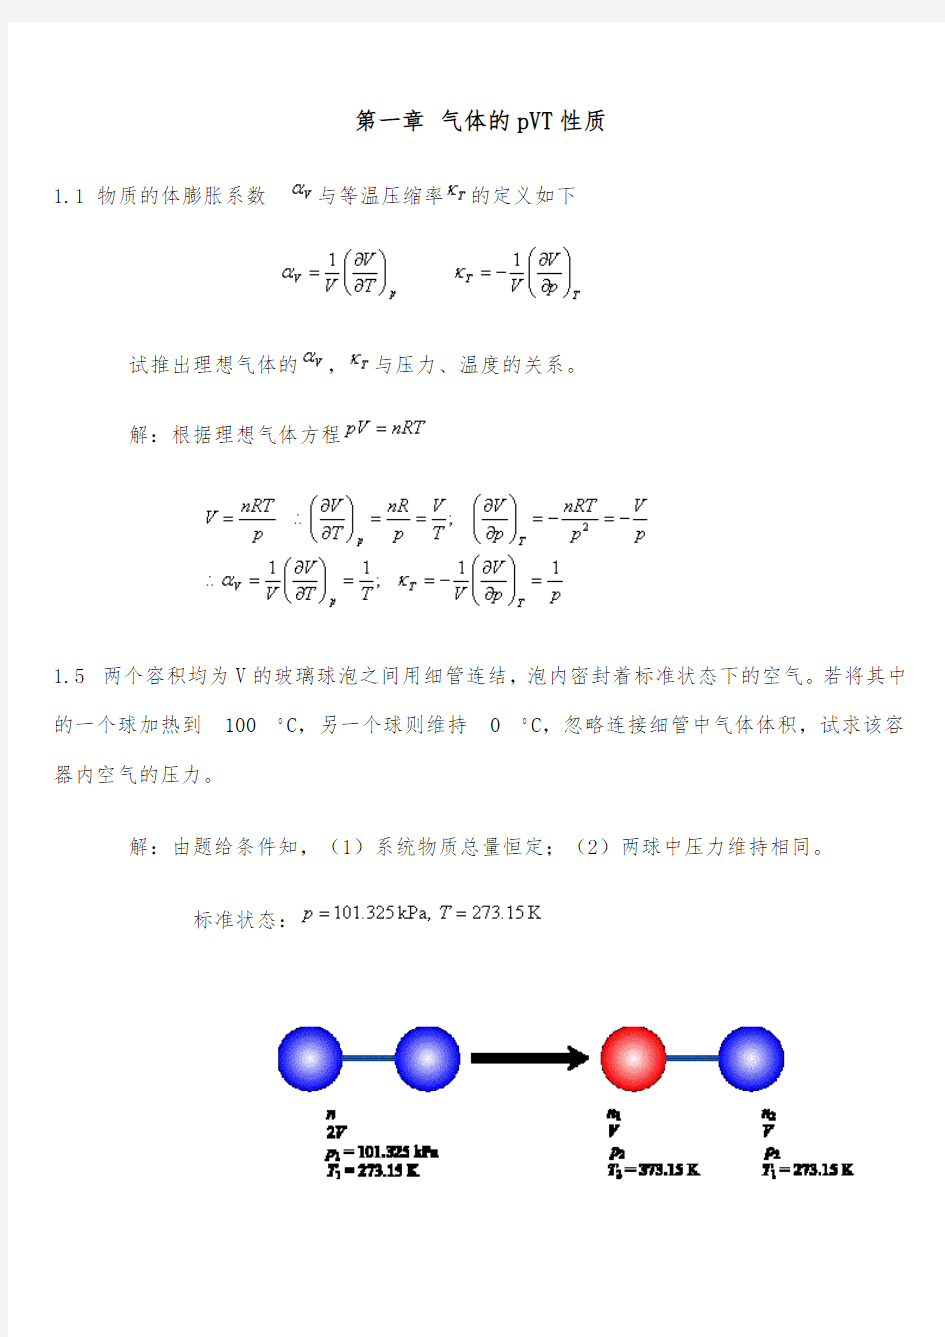 《物理化学》第五版(天津大学物理化学教研室 著)课后习题答案 高等教育出版社